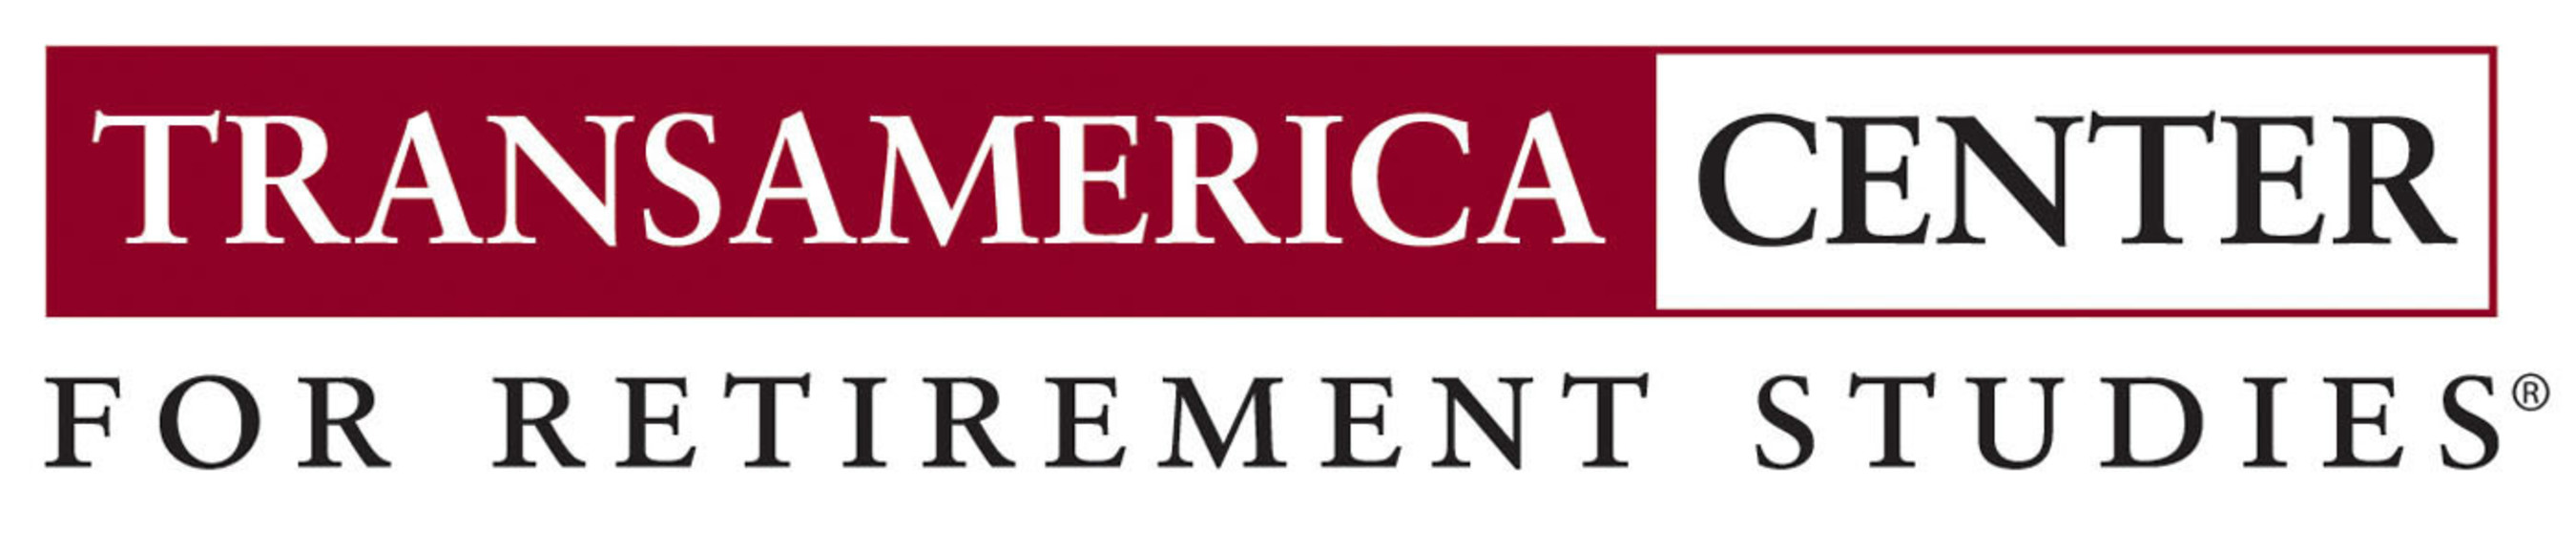 Transamerica Center for Retirement Studies logo.